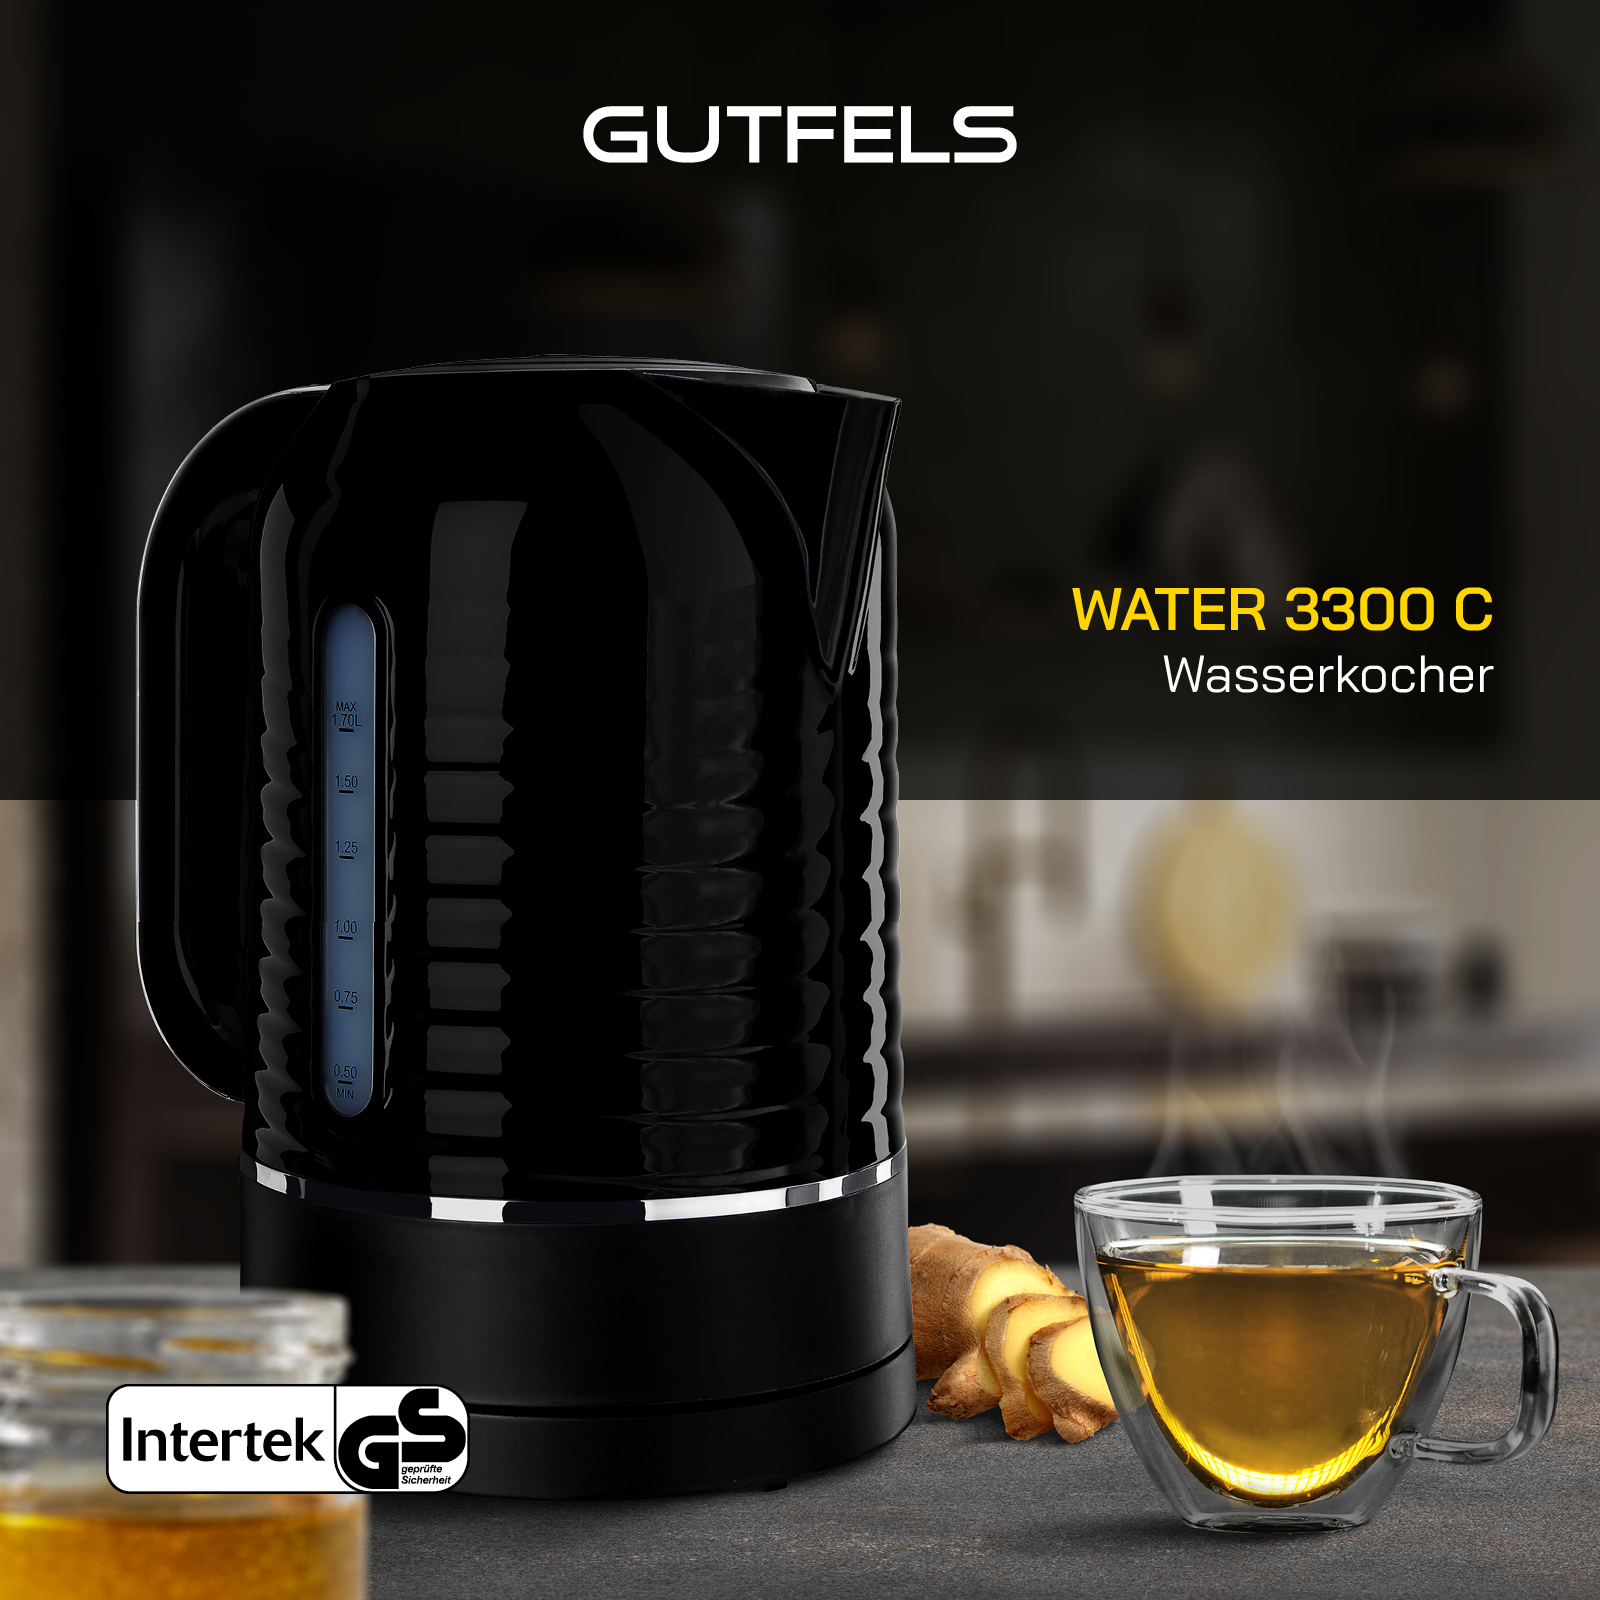 GUTFELS WATER C Wasserkocher, 3300 Schwarz